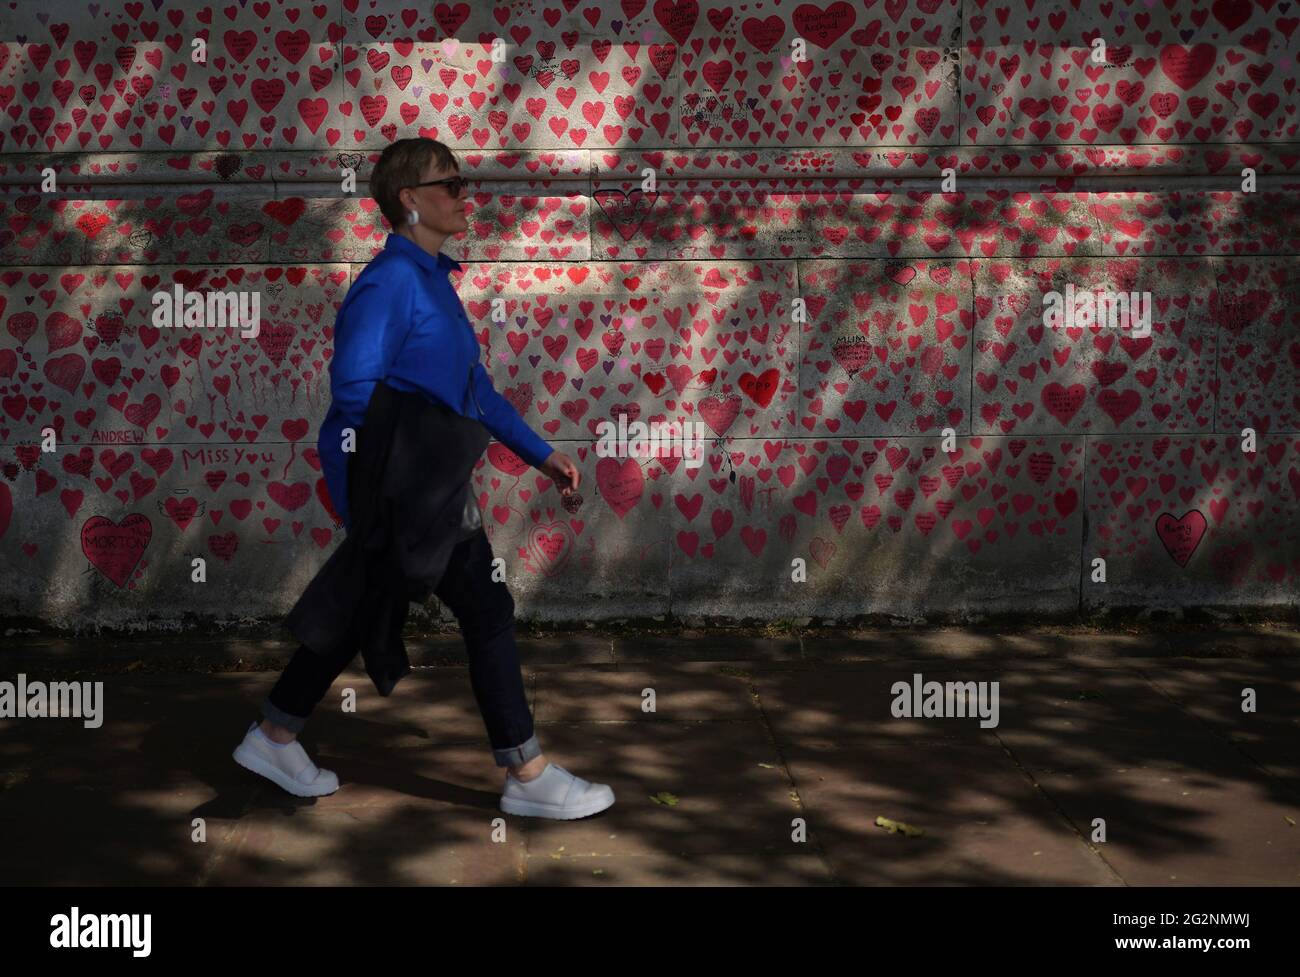 Una donna passa davanti al National Covid Memorial Wall sull'argine di Londra, dopo l'ulteriore allentamento delle restrizioni di blocco in Inghilterra. Data immagine: Sabato 12 giugno 2021. Foto Stock